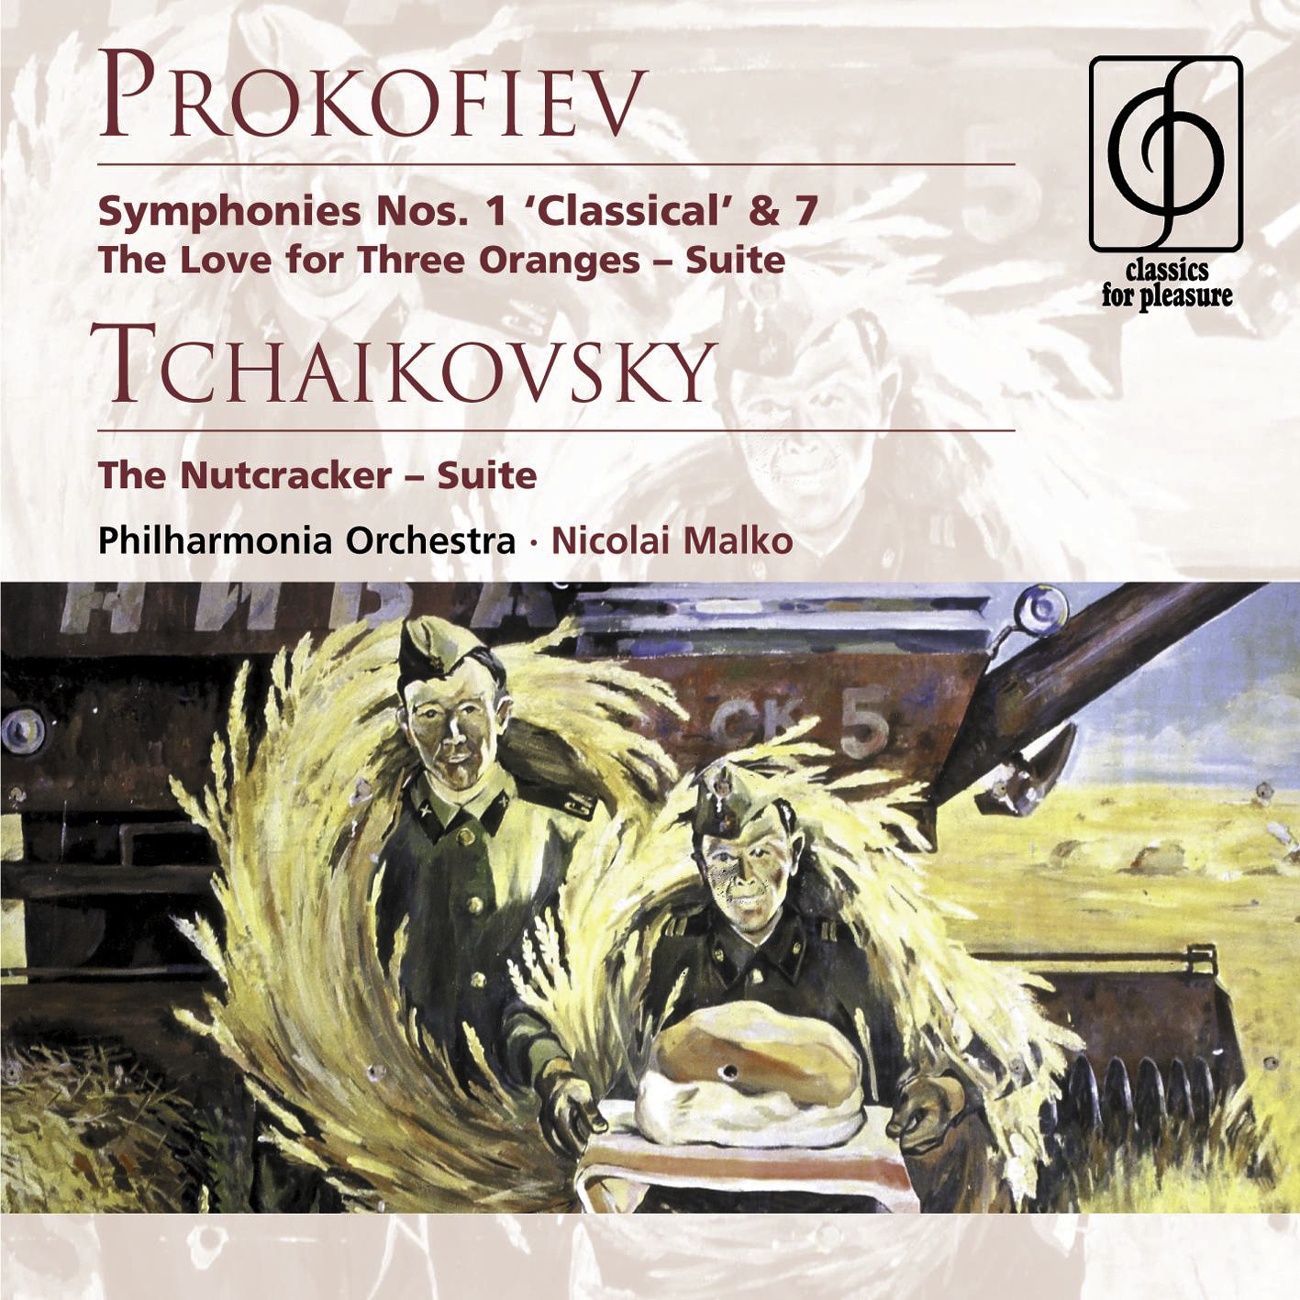 Prokofiev: Symphonies Nos. 1 & 7 etc